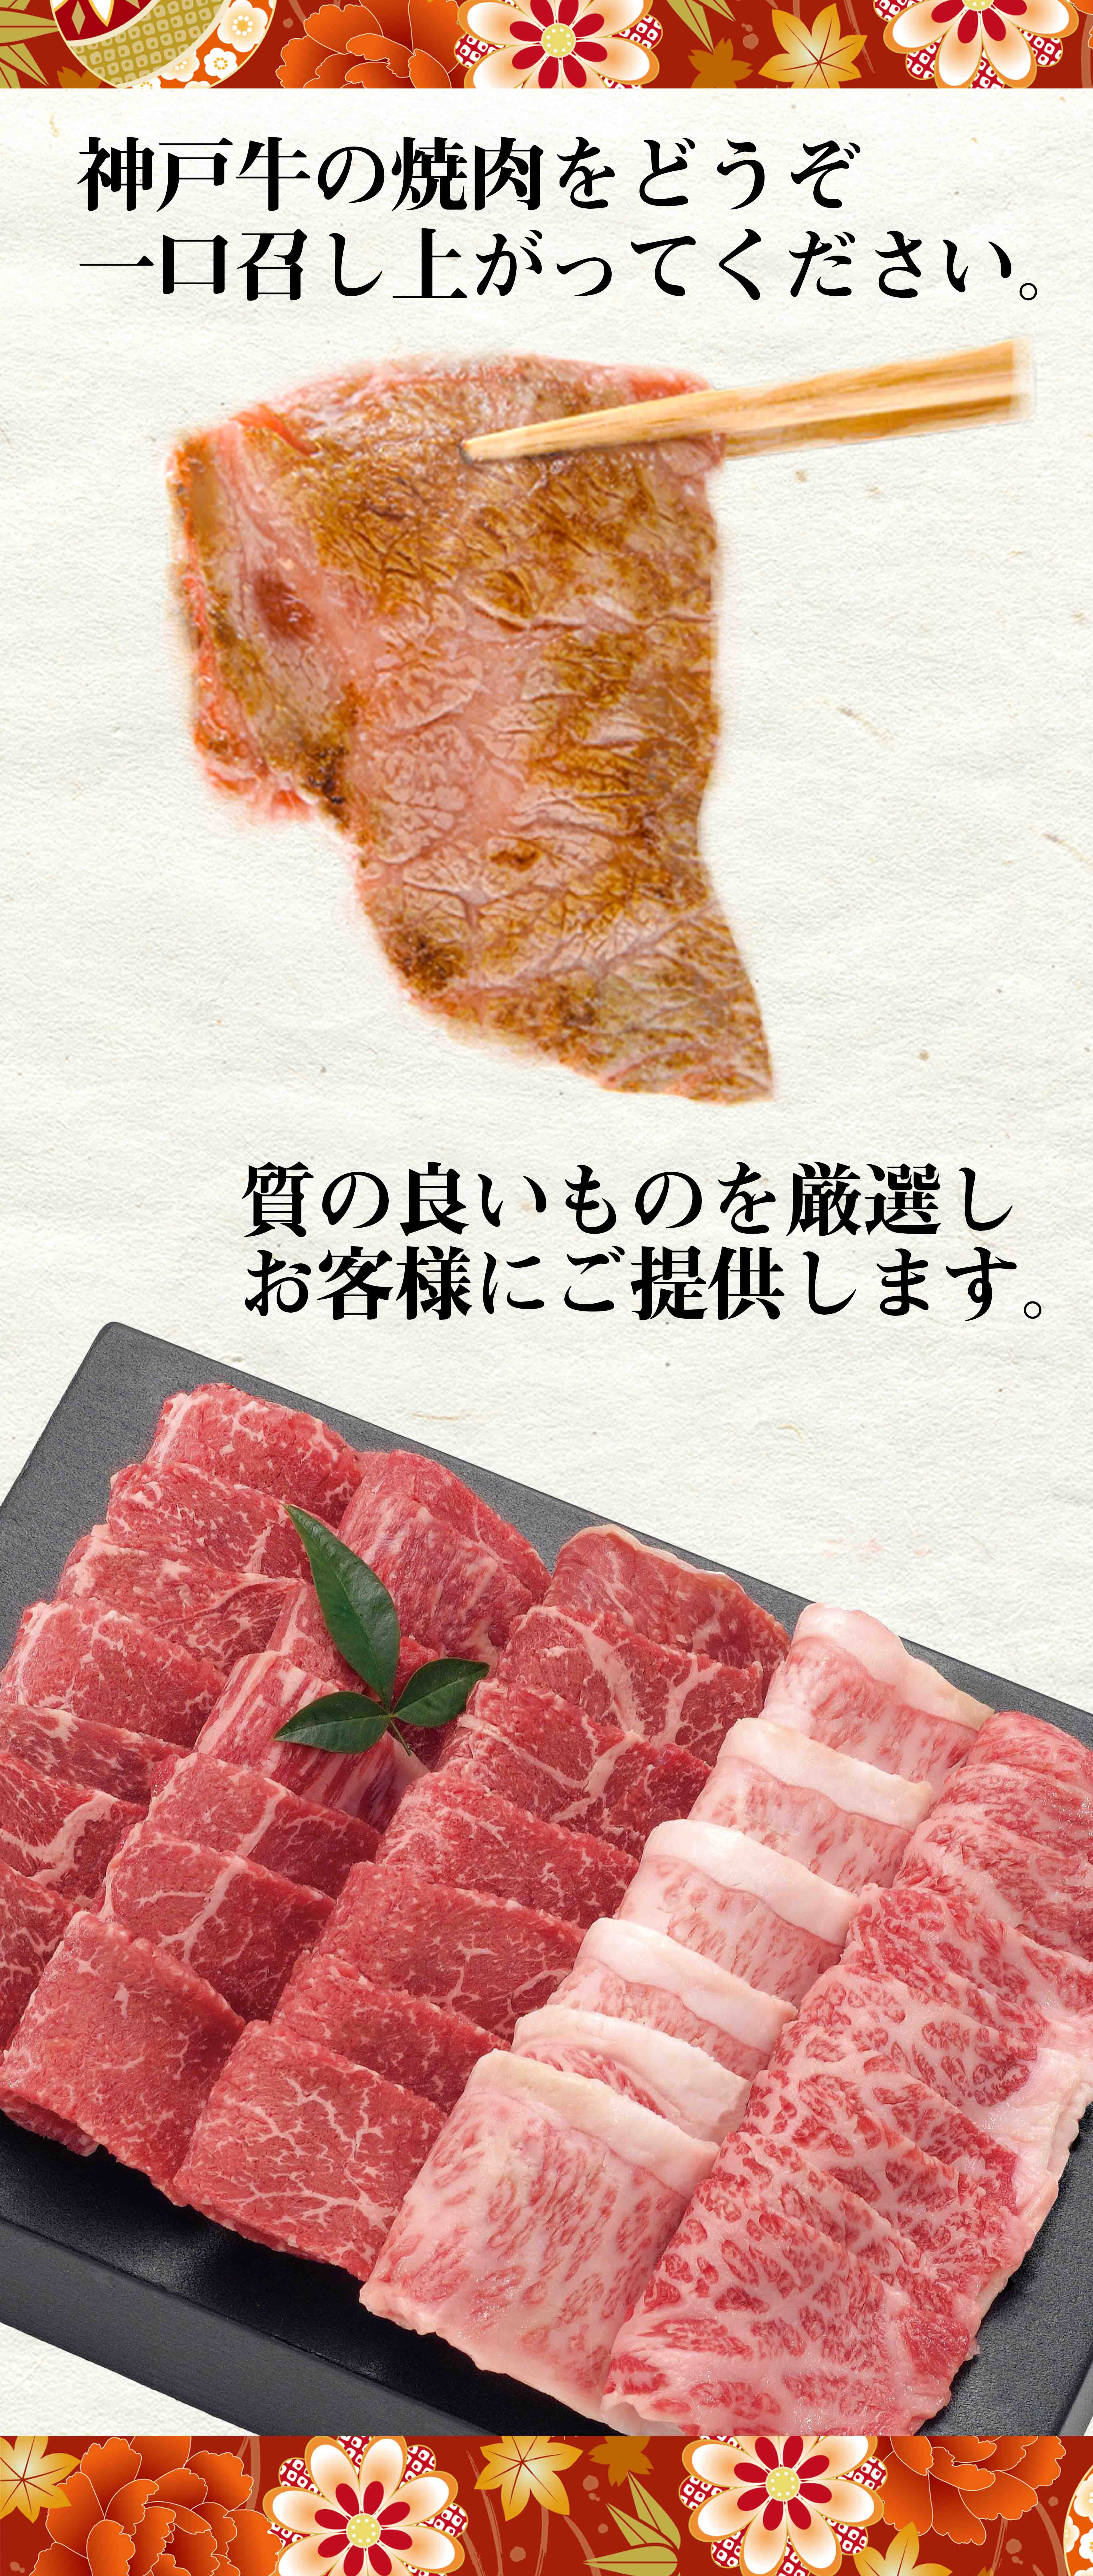 神戸焼肉